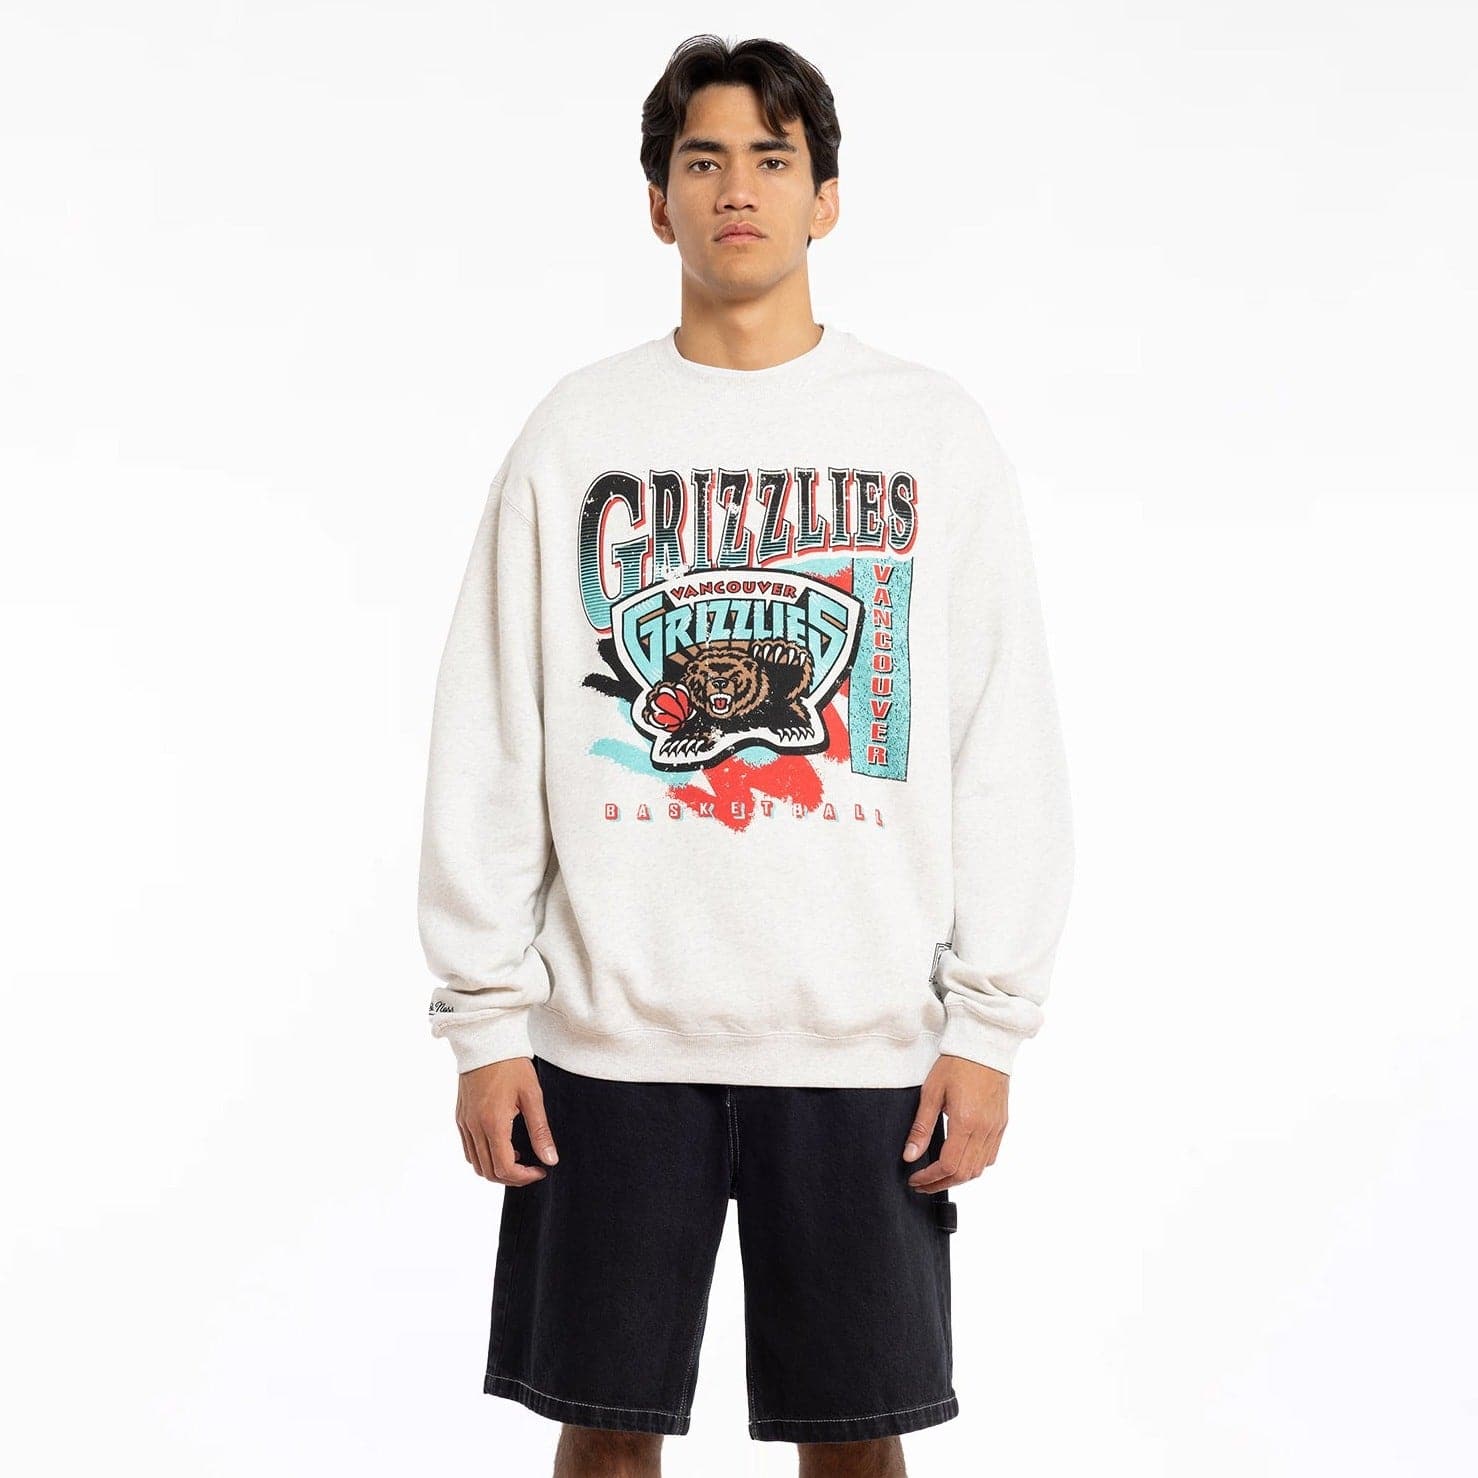 memphis grizzlies vintage sweatshirt